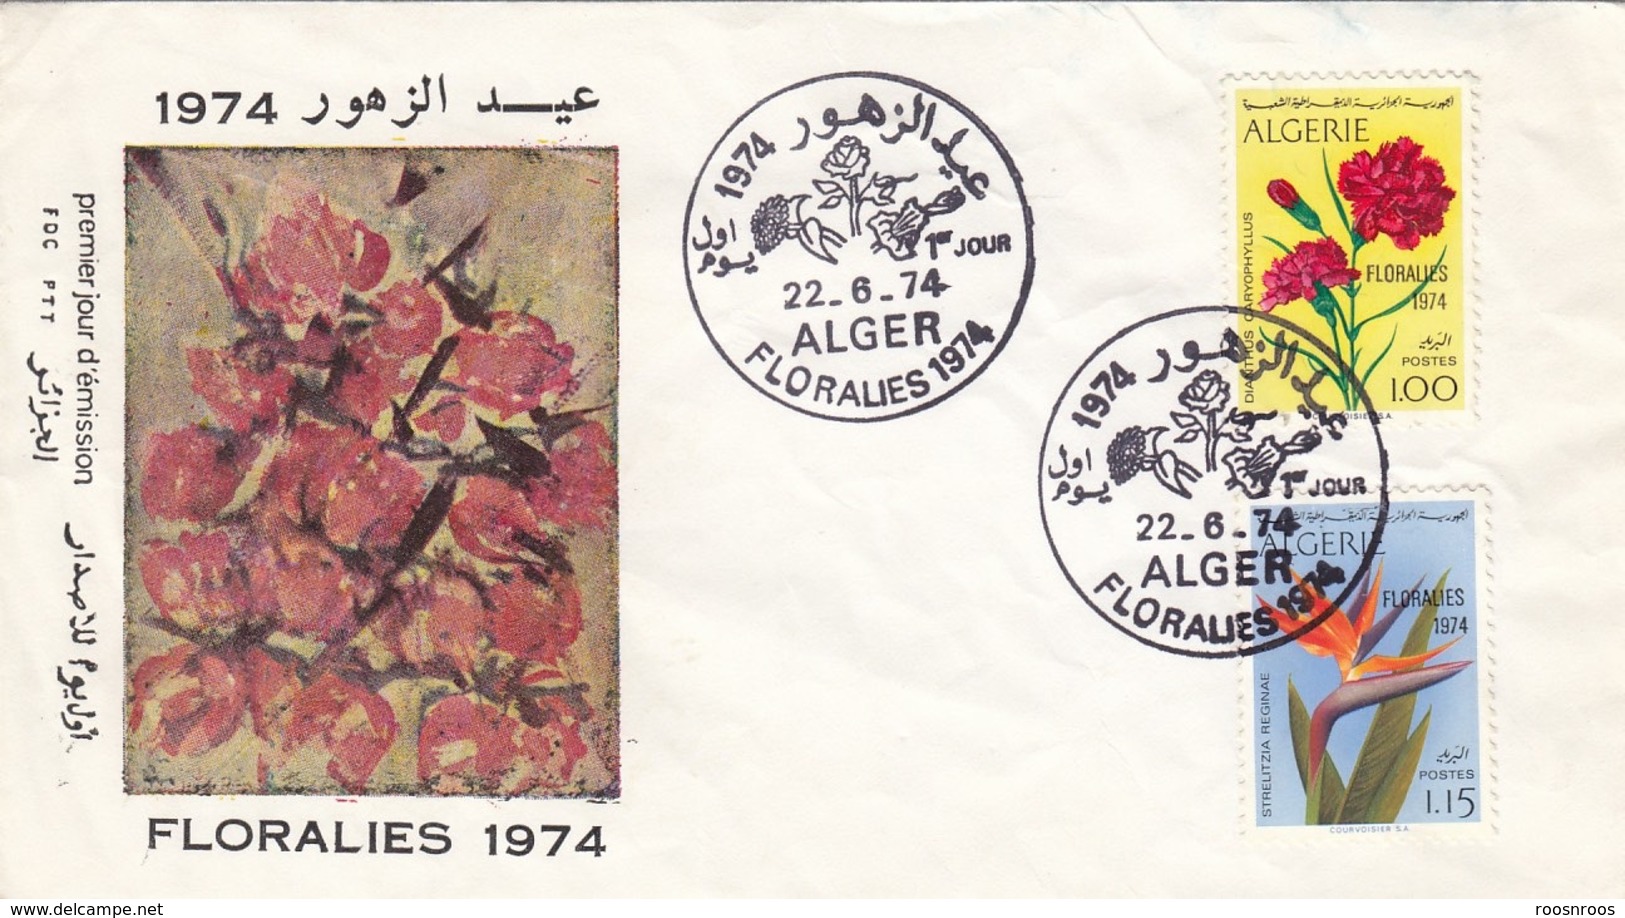 ENVELOPPE PREMIER JOUR ALGERIE - FLORALIES D'ALGER 1974 -FDC - FDC